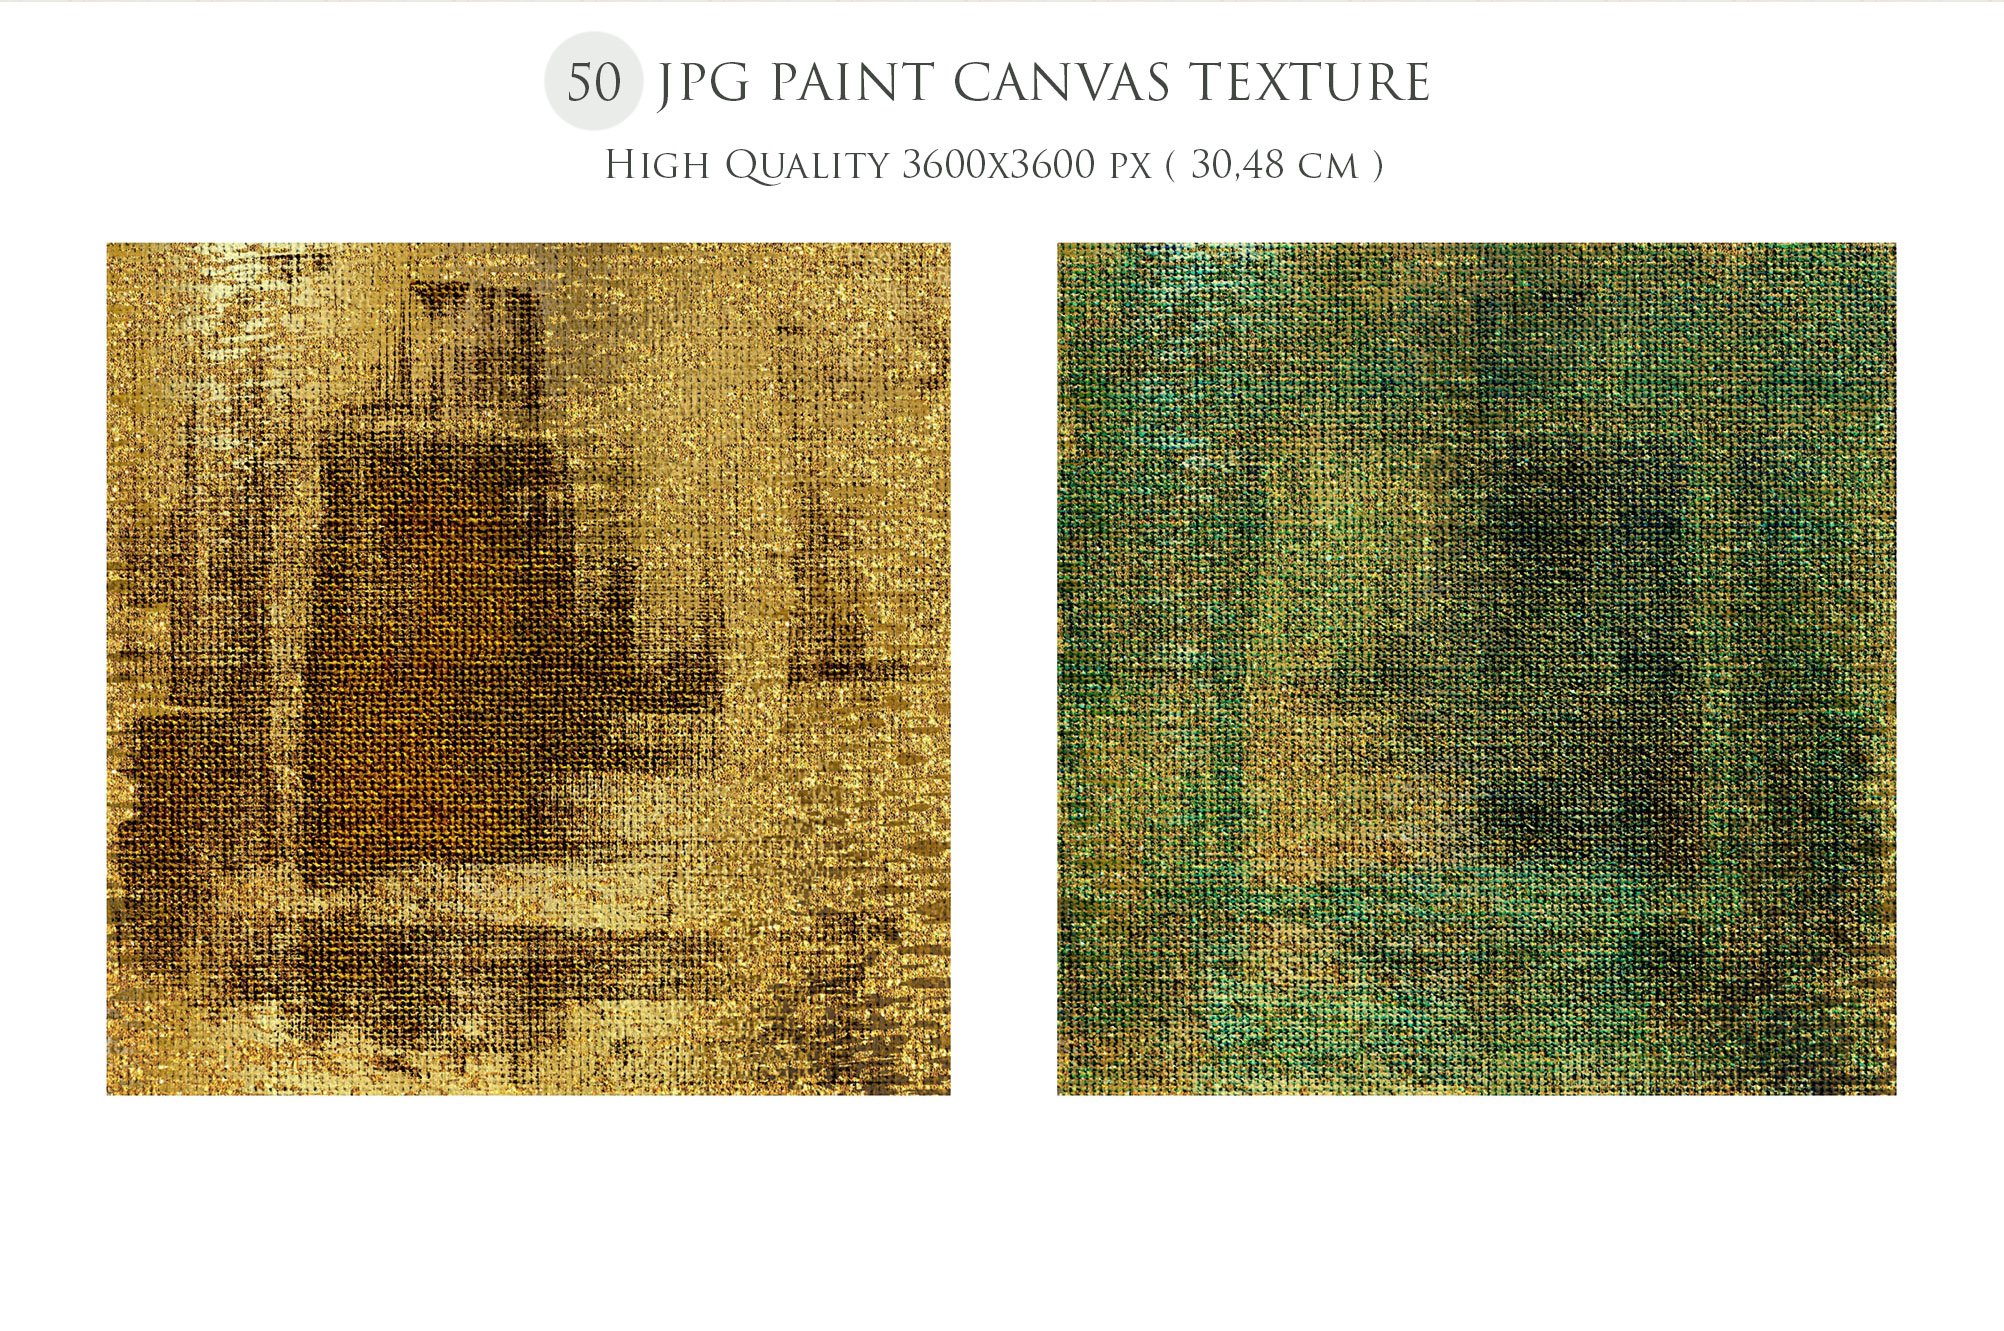 Paint Texture & Gold Backgrounds